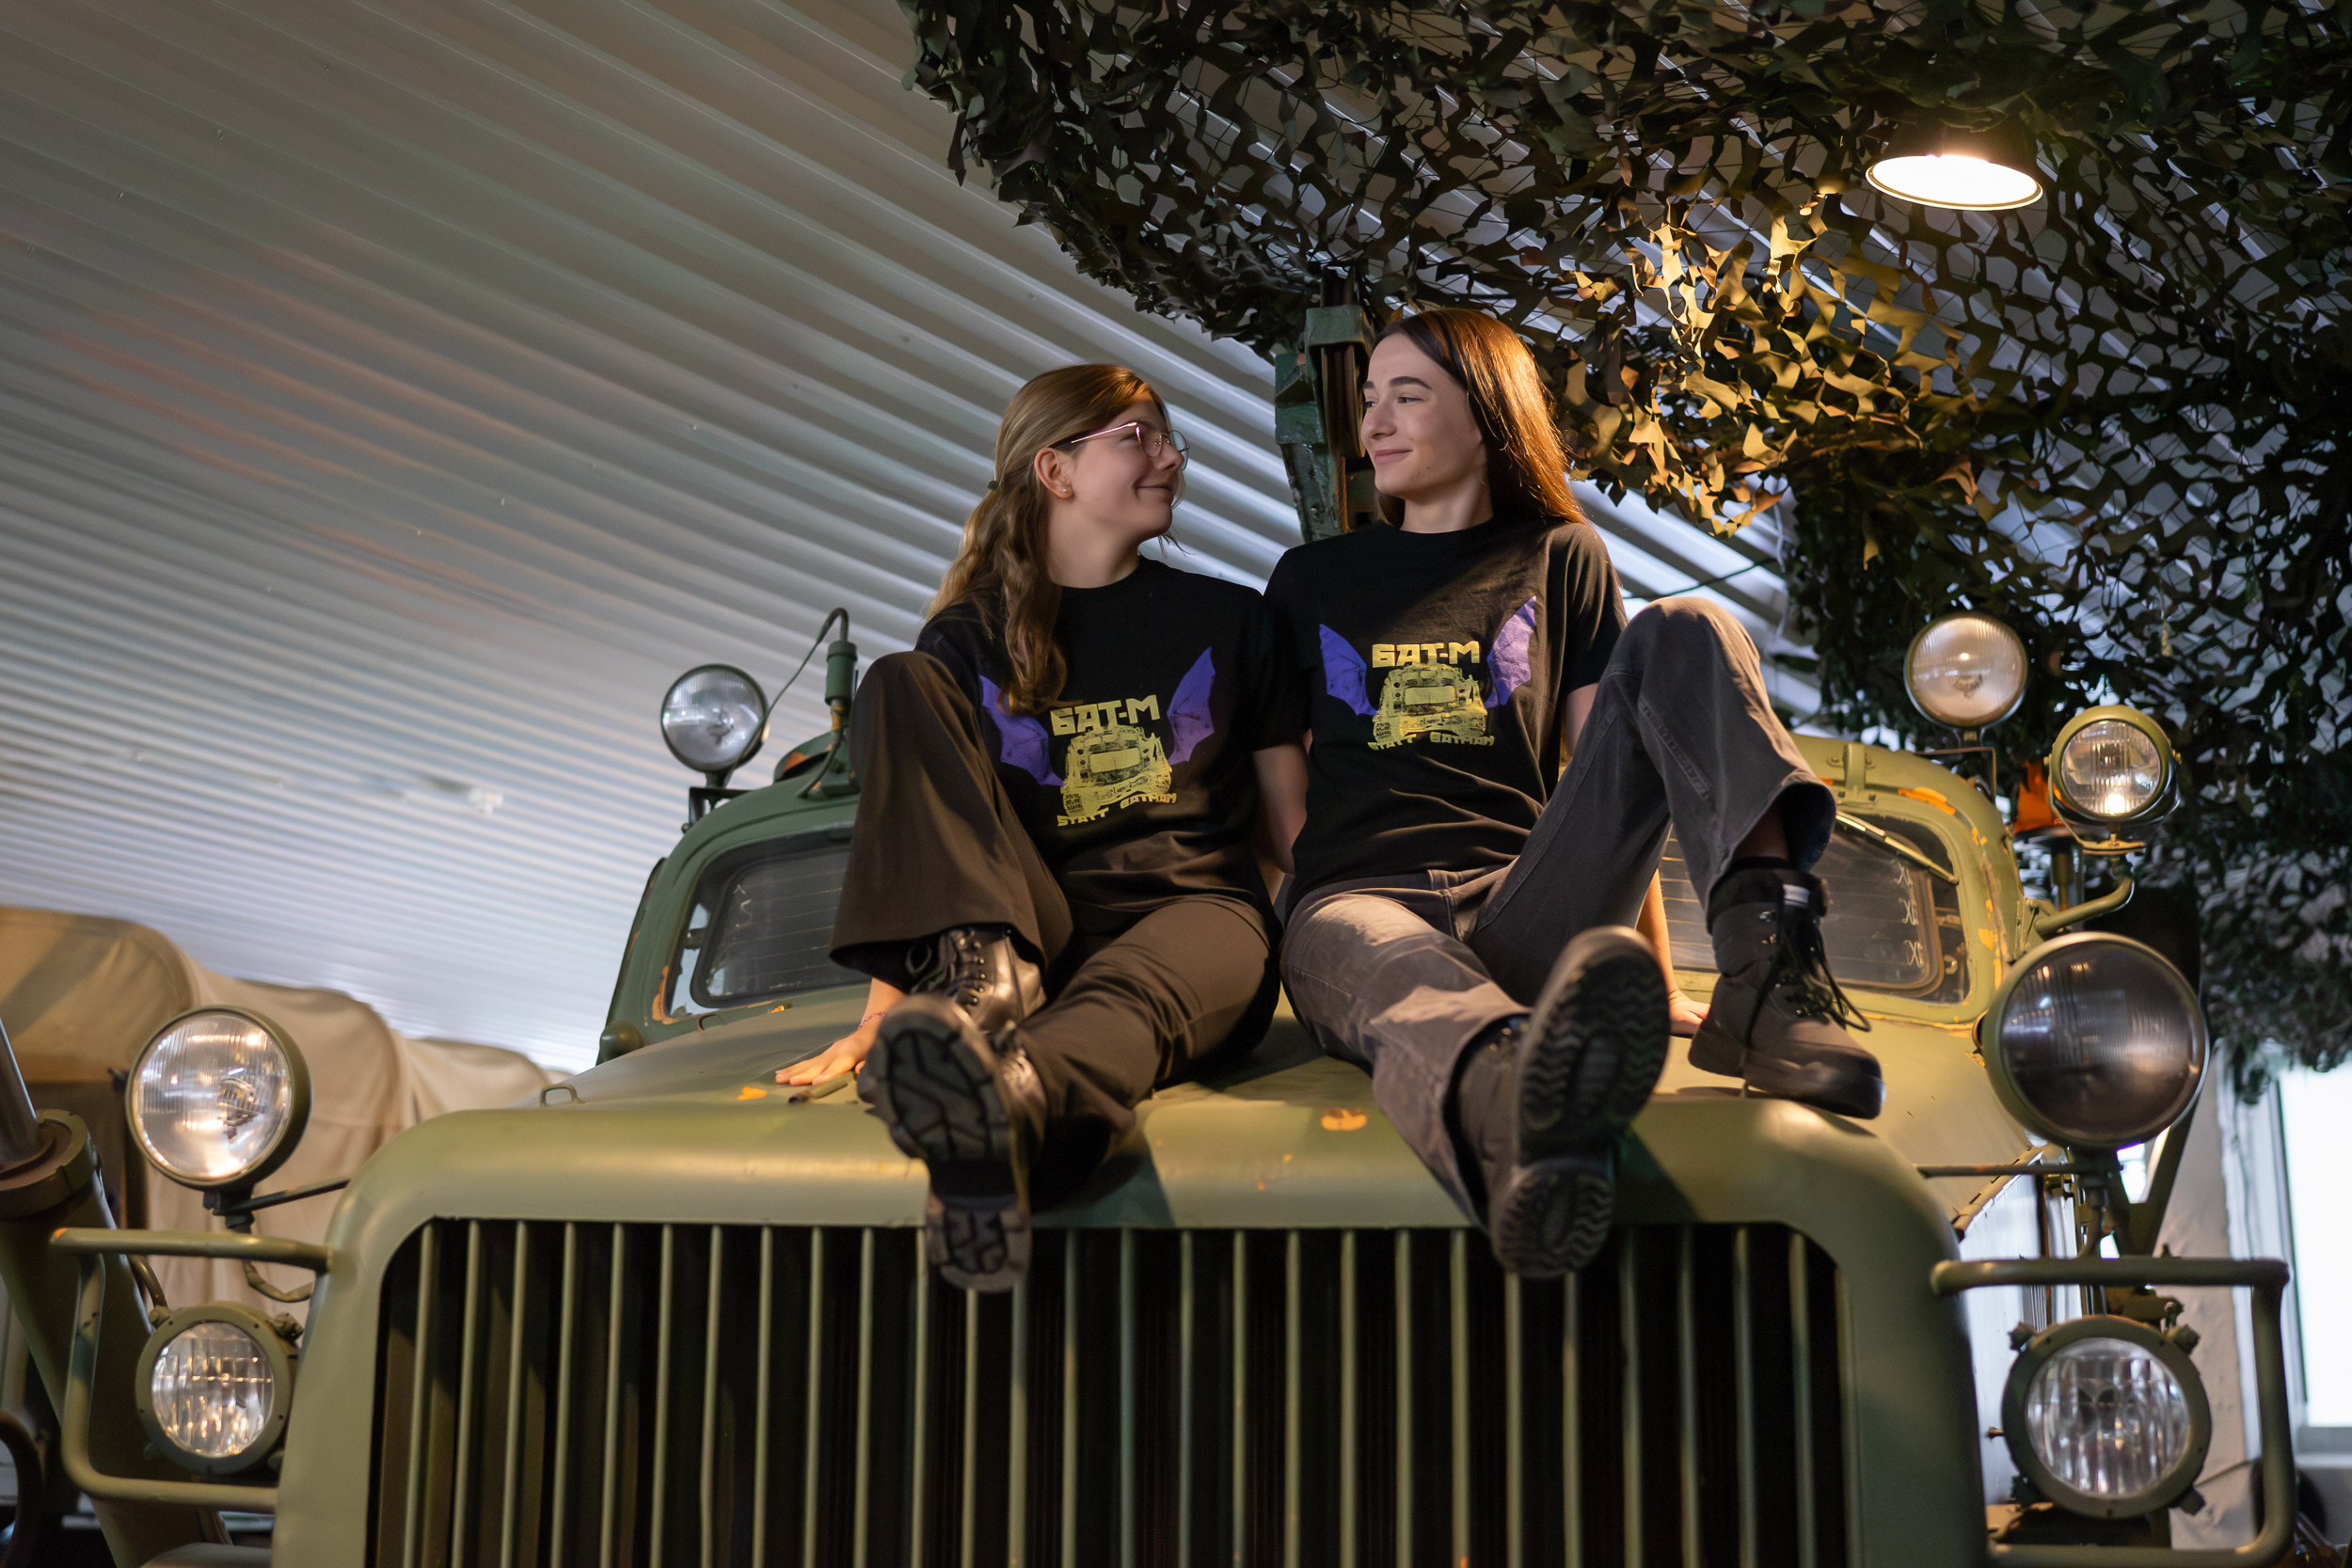 zwei junge Frauen auf Motorhaube der BAT-M, beide tragen schwarzes T-Shirt mit gelber Aufschrift BAT-M statt Batman und lila Print BAT-M-Raupe mit Fledermausflügeln.